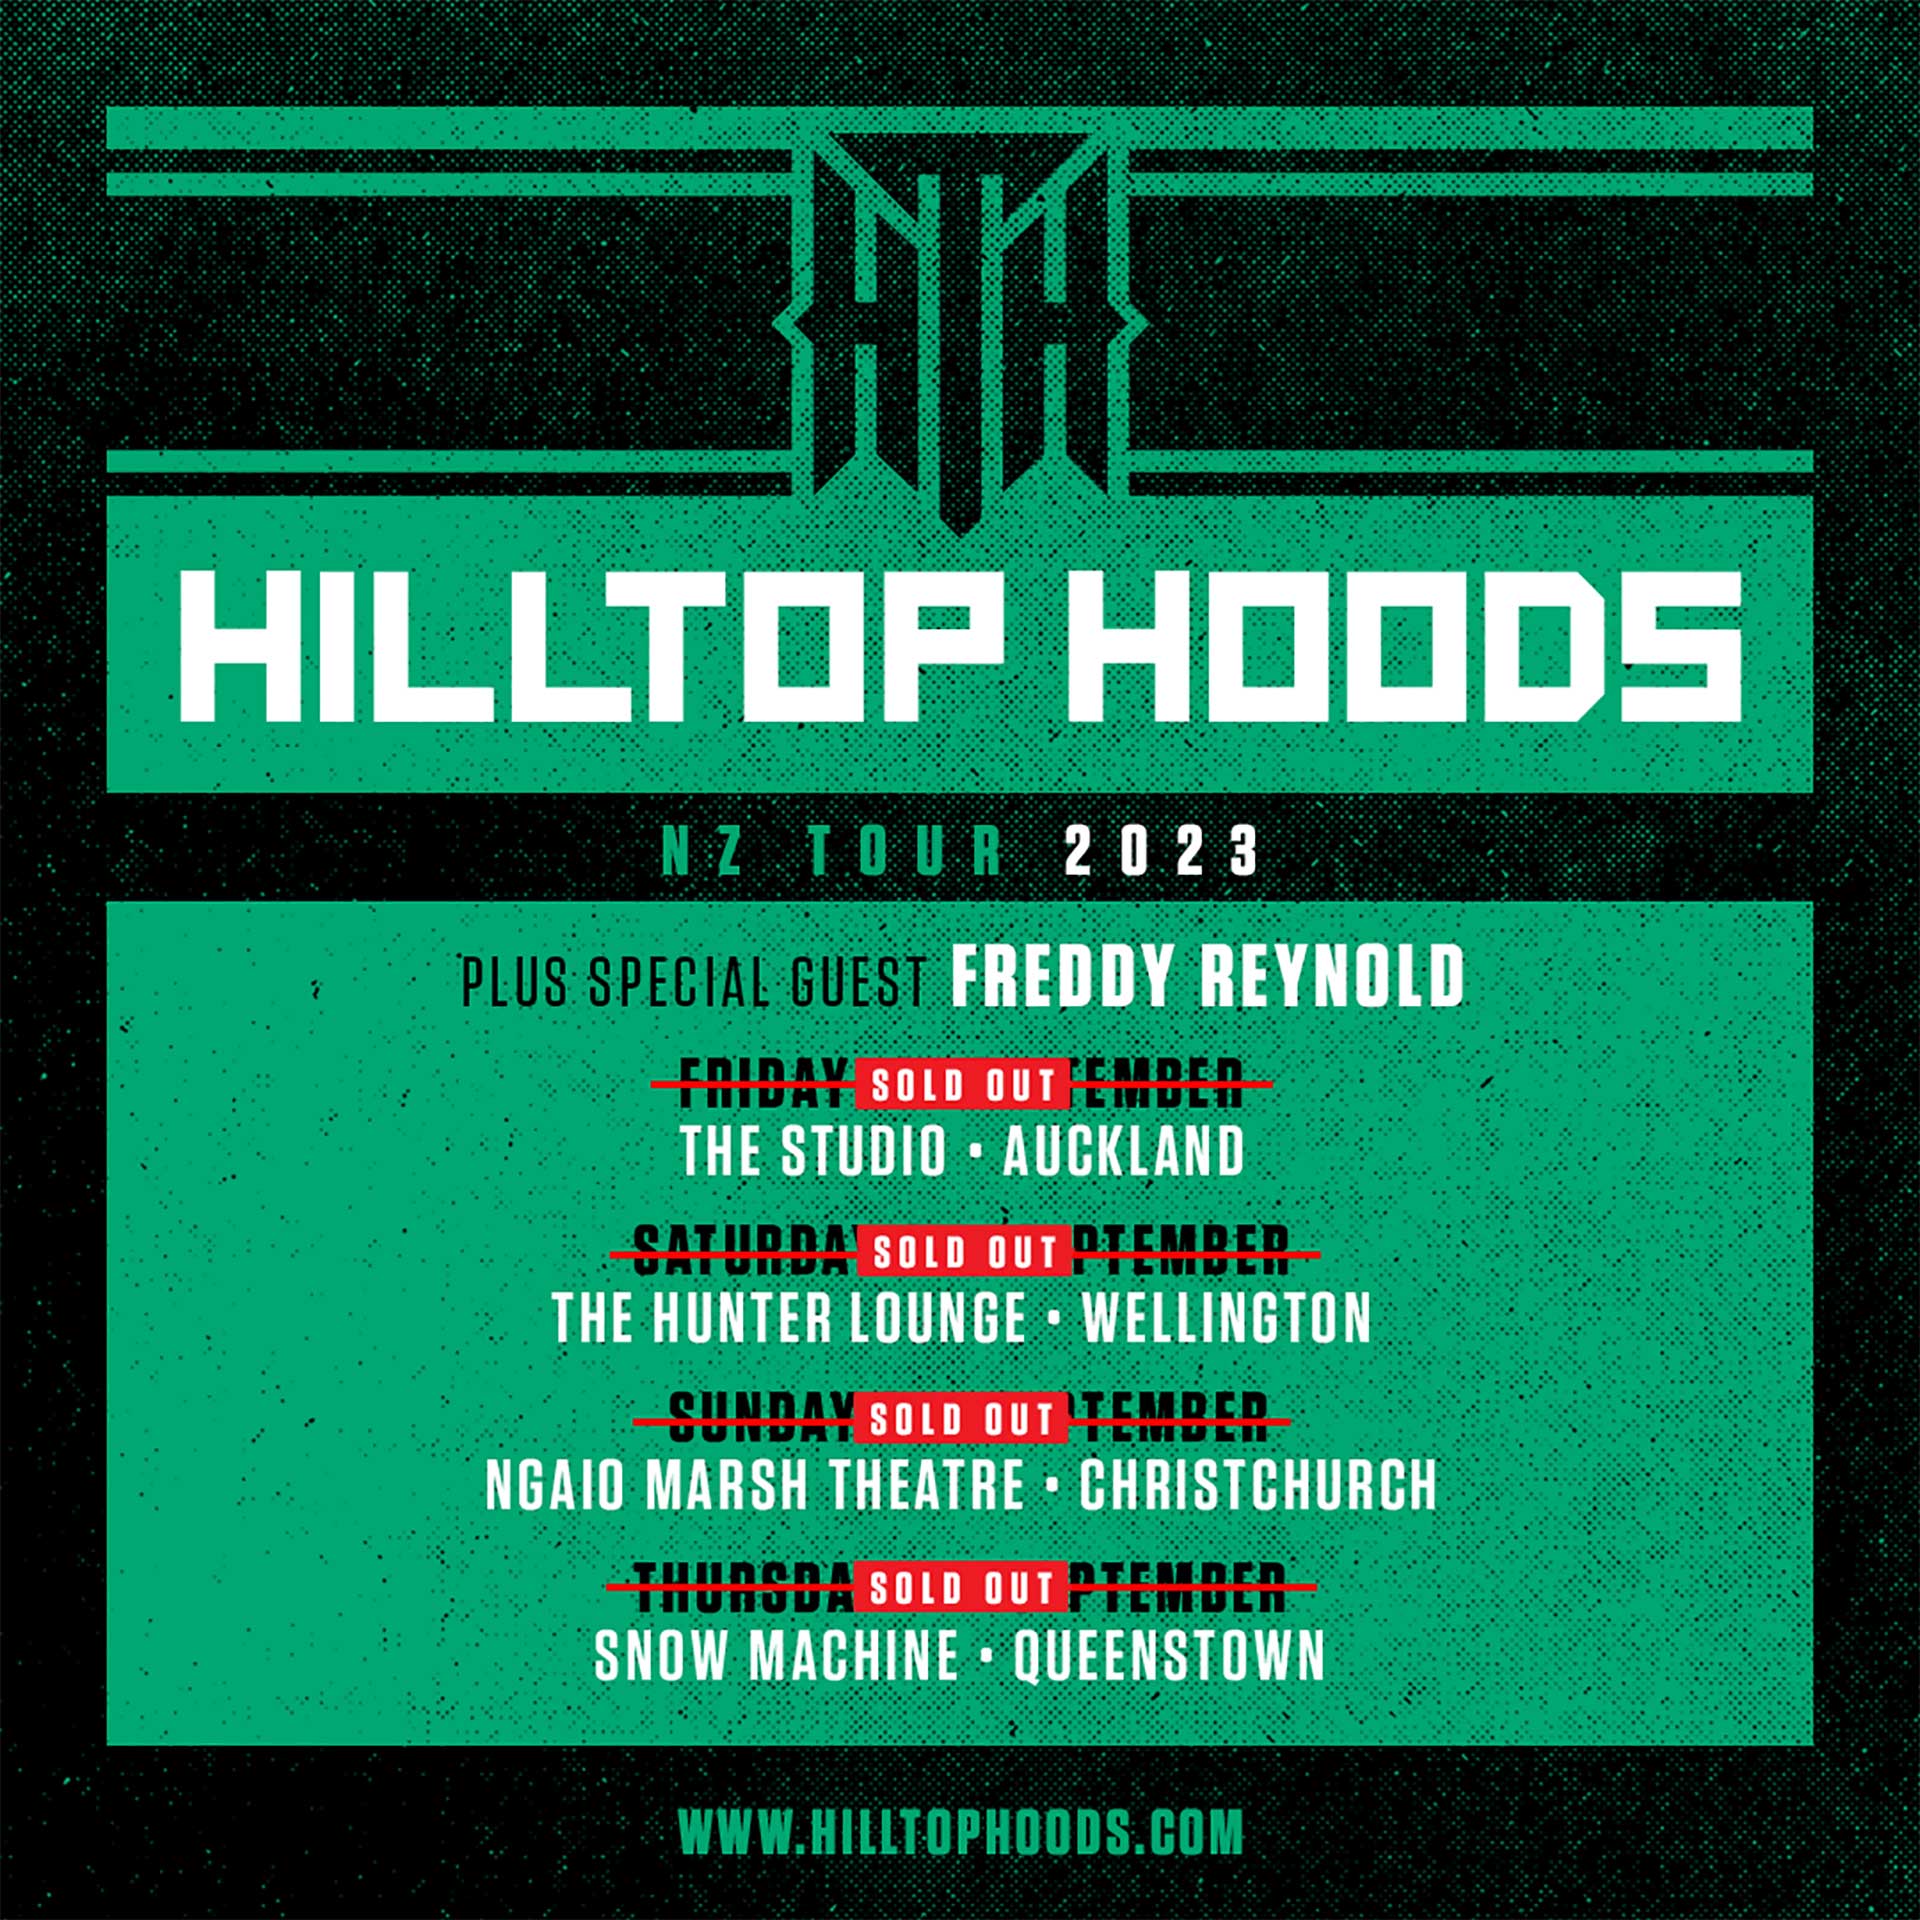 hilltop hoods tour 2023